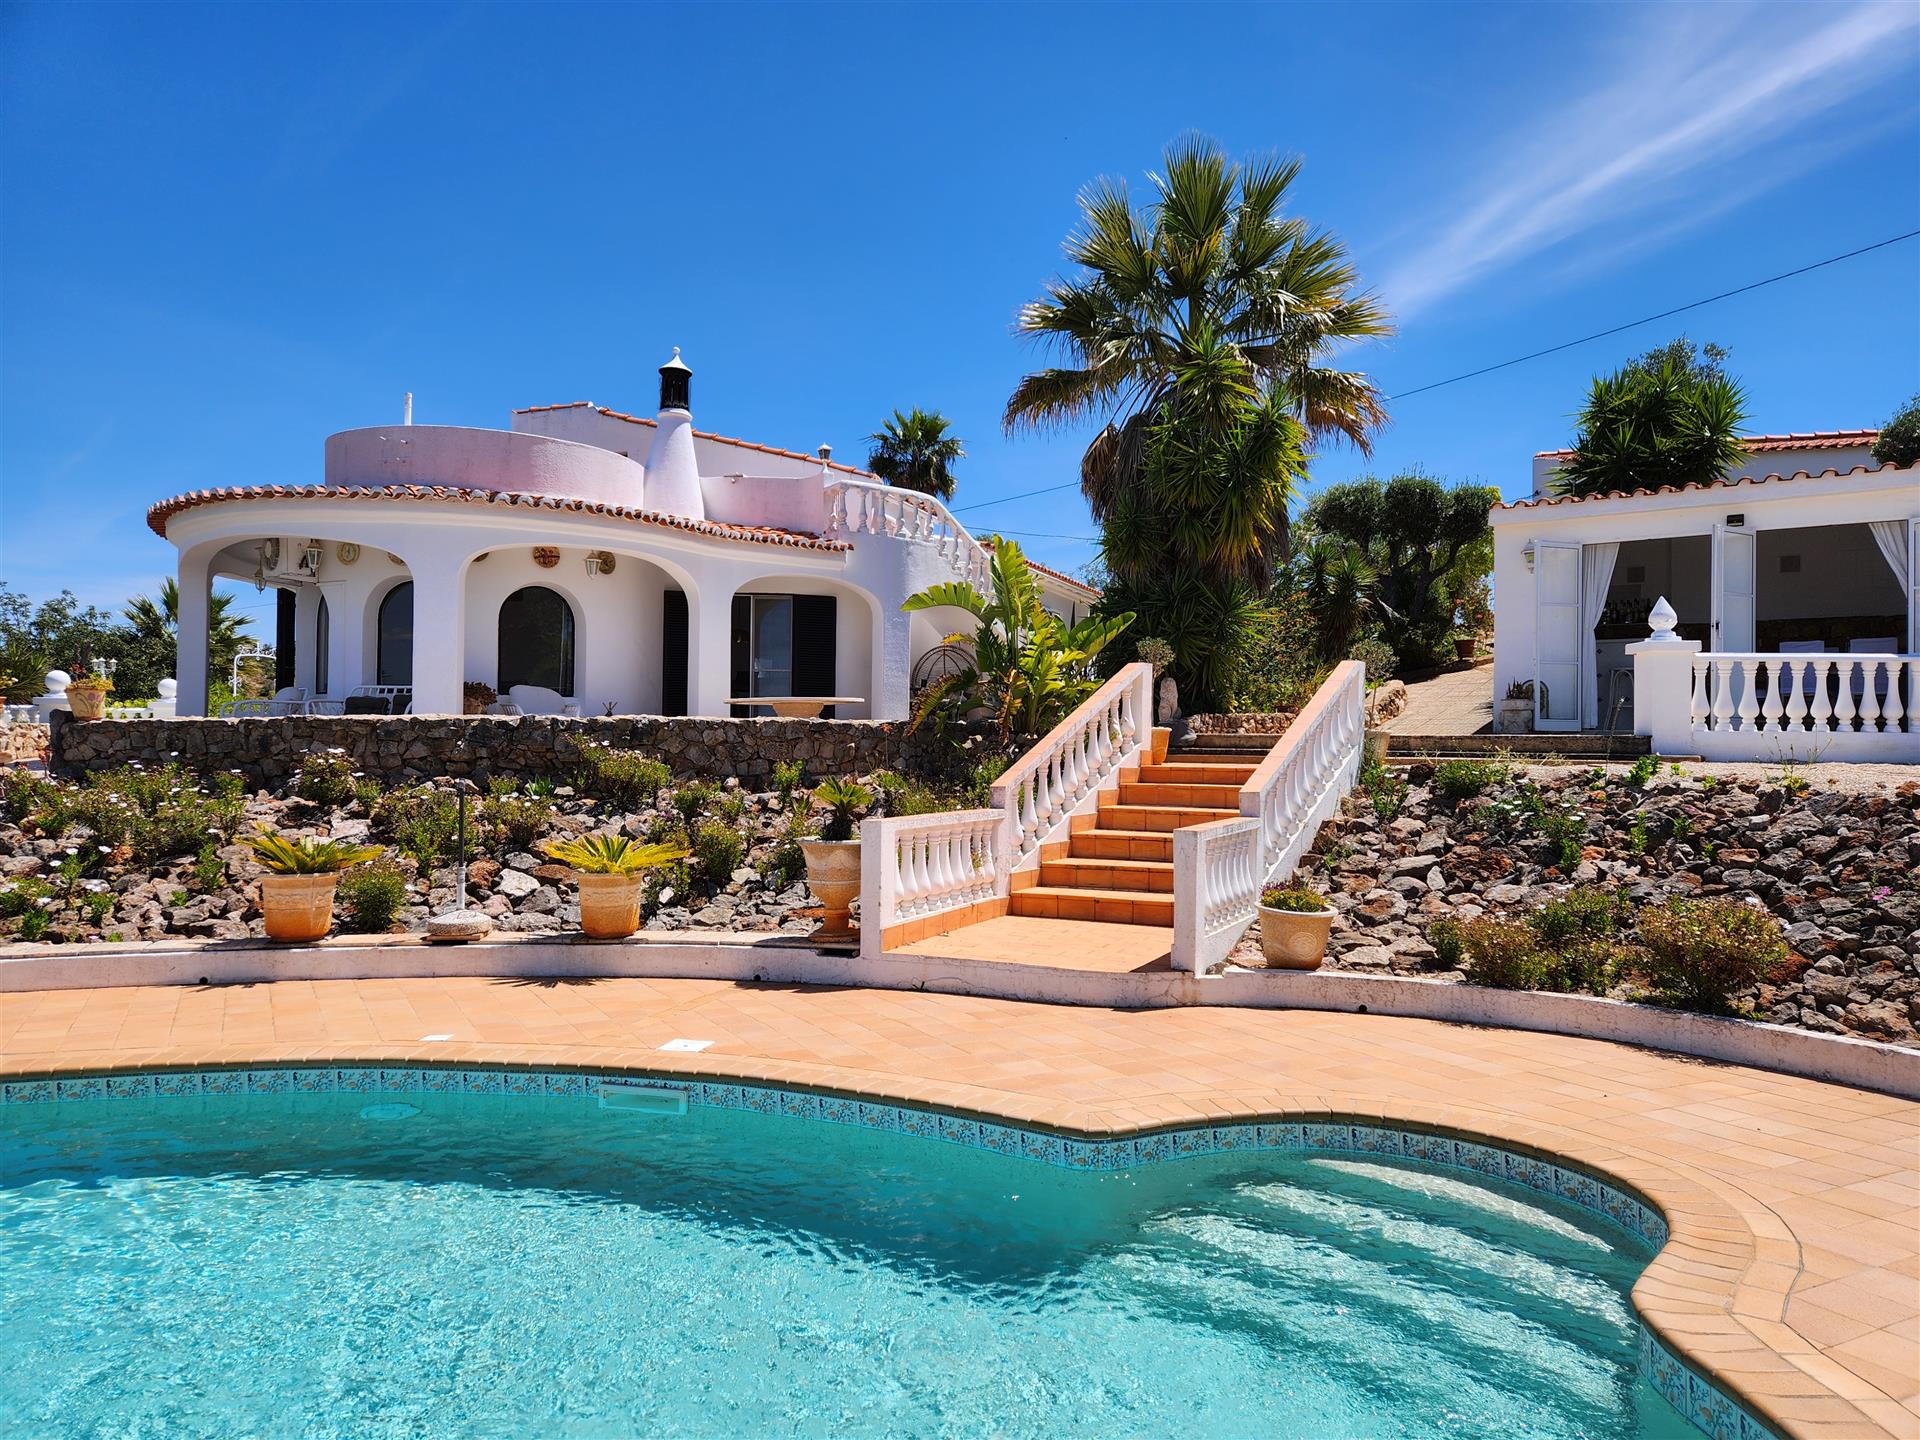 Refúgio idílico: Villa romântica com vistas encantadoras perto de Silves, Portugal